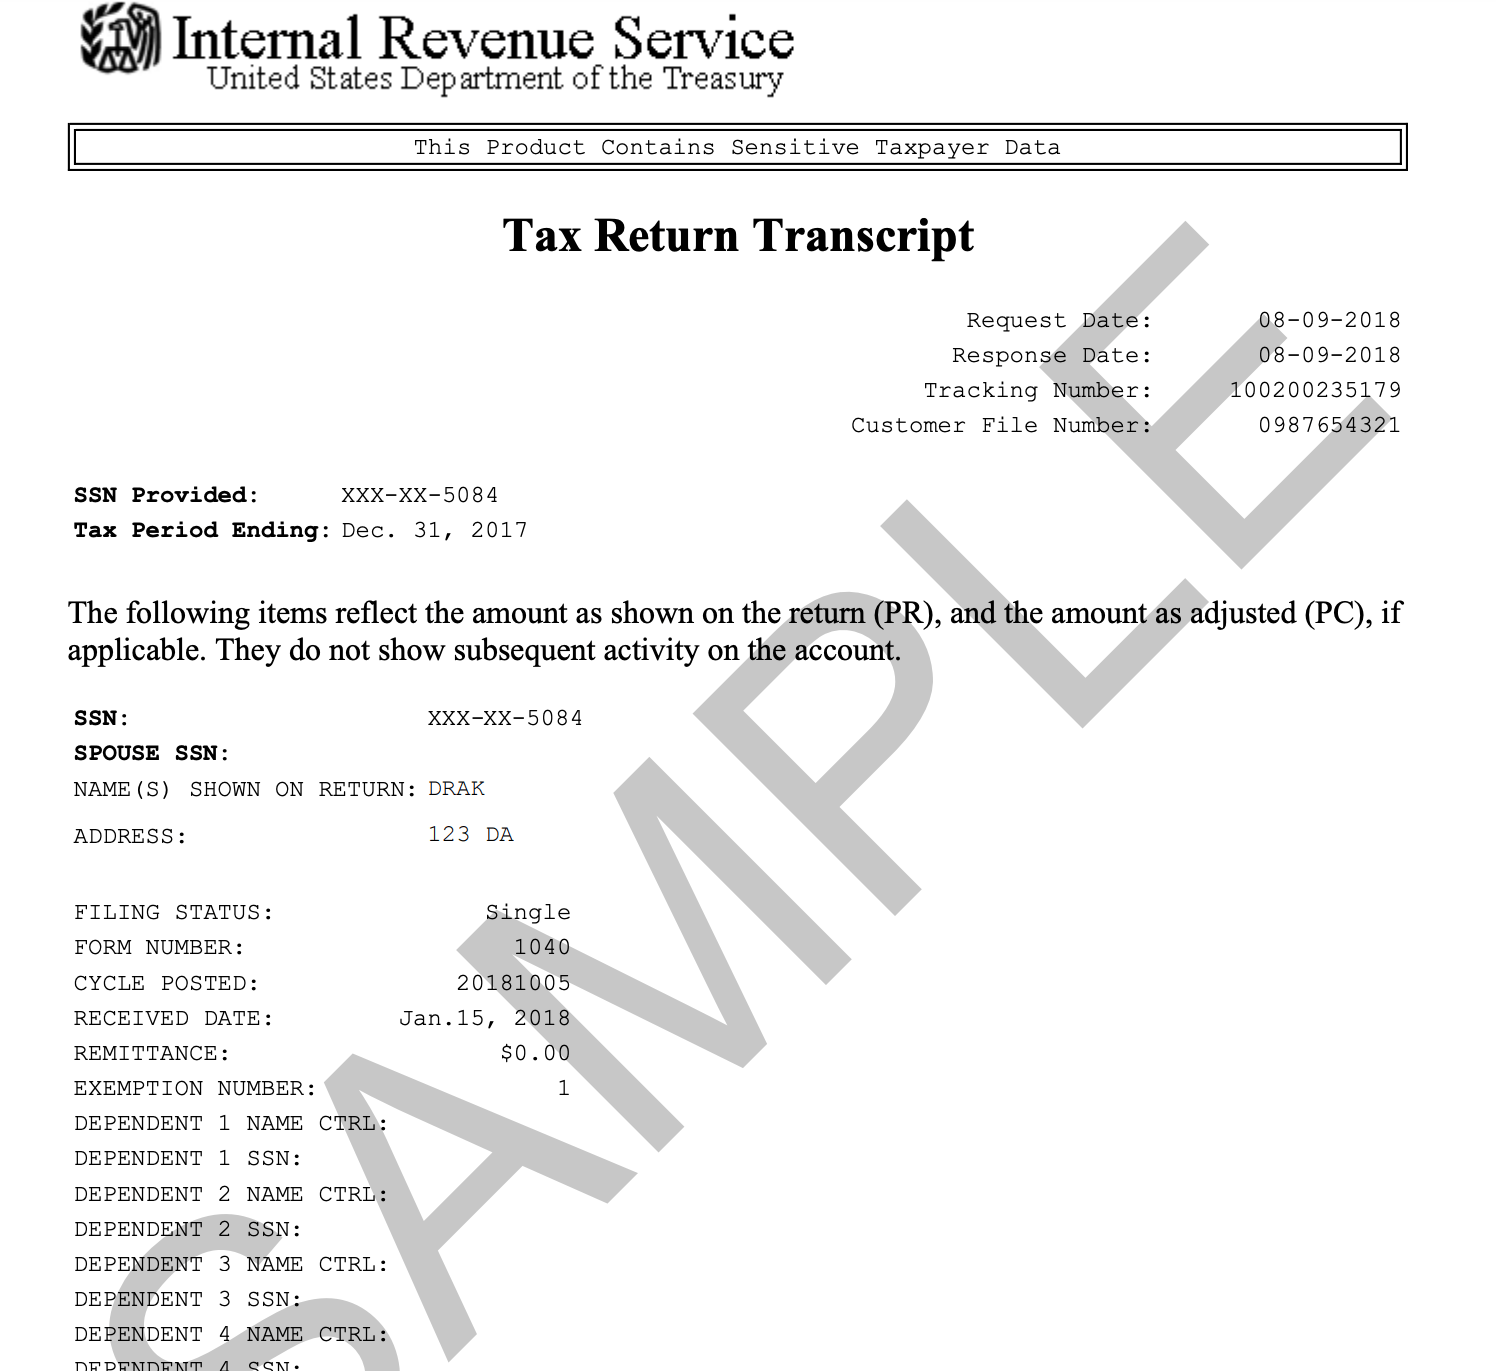 U.S. Federal Tax Return Transcript